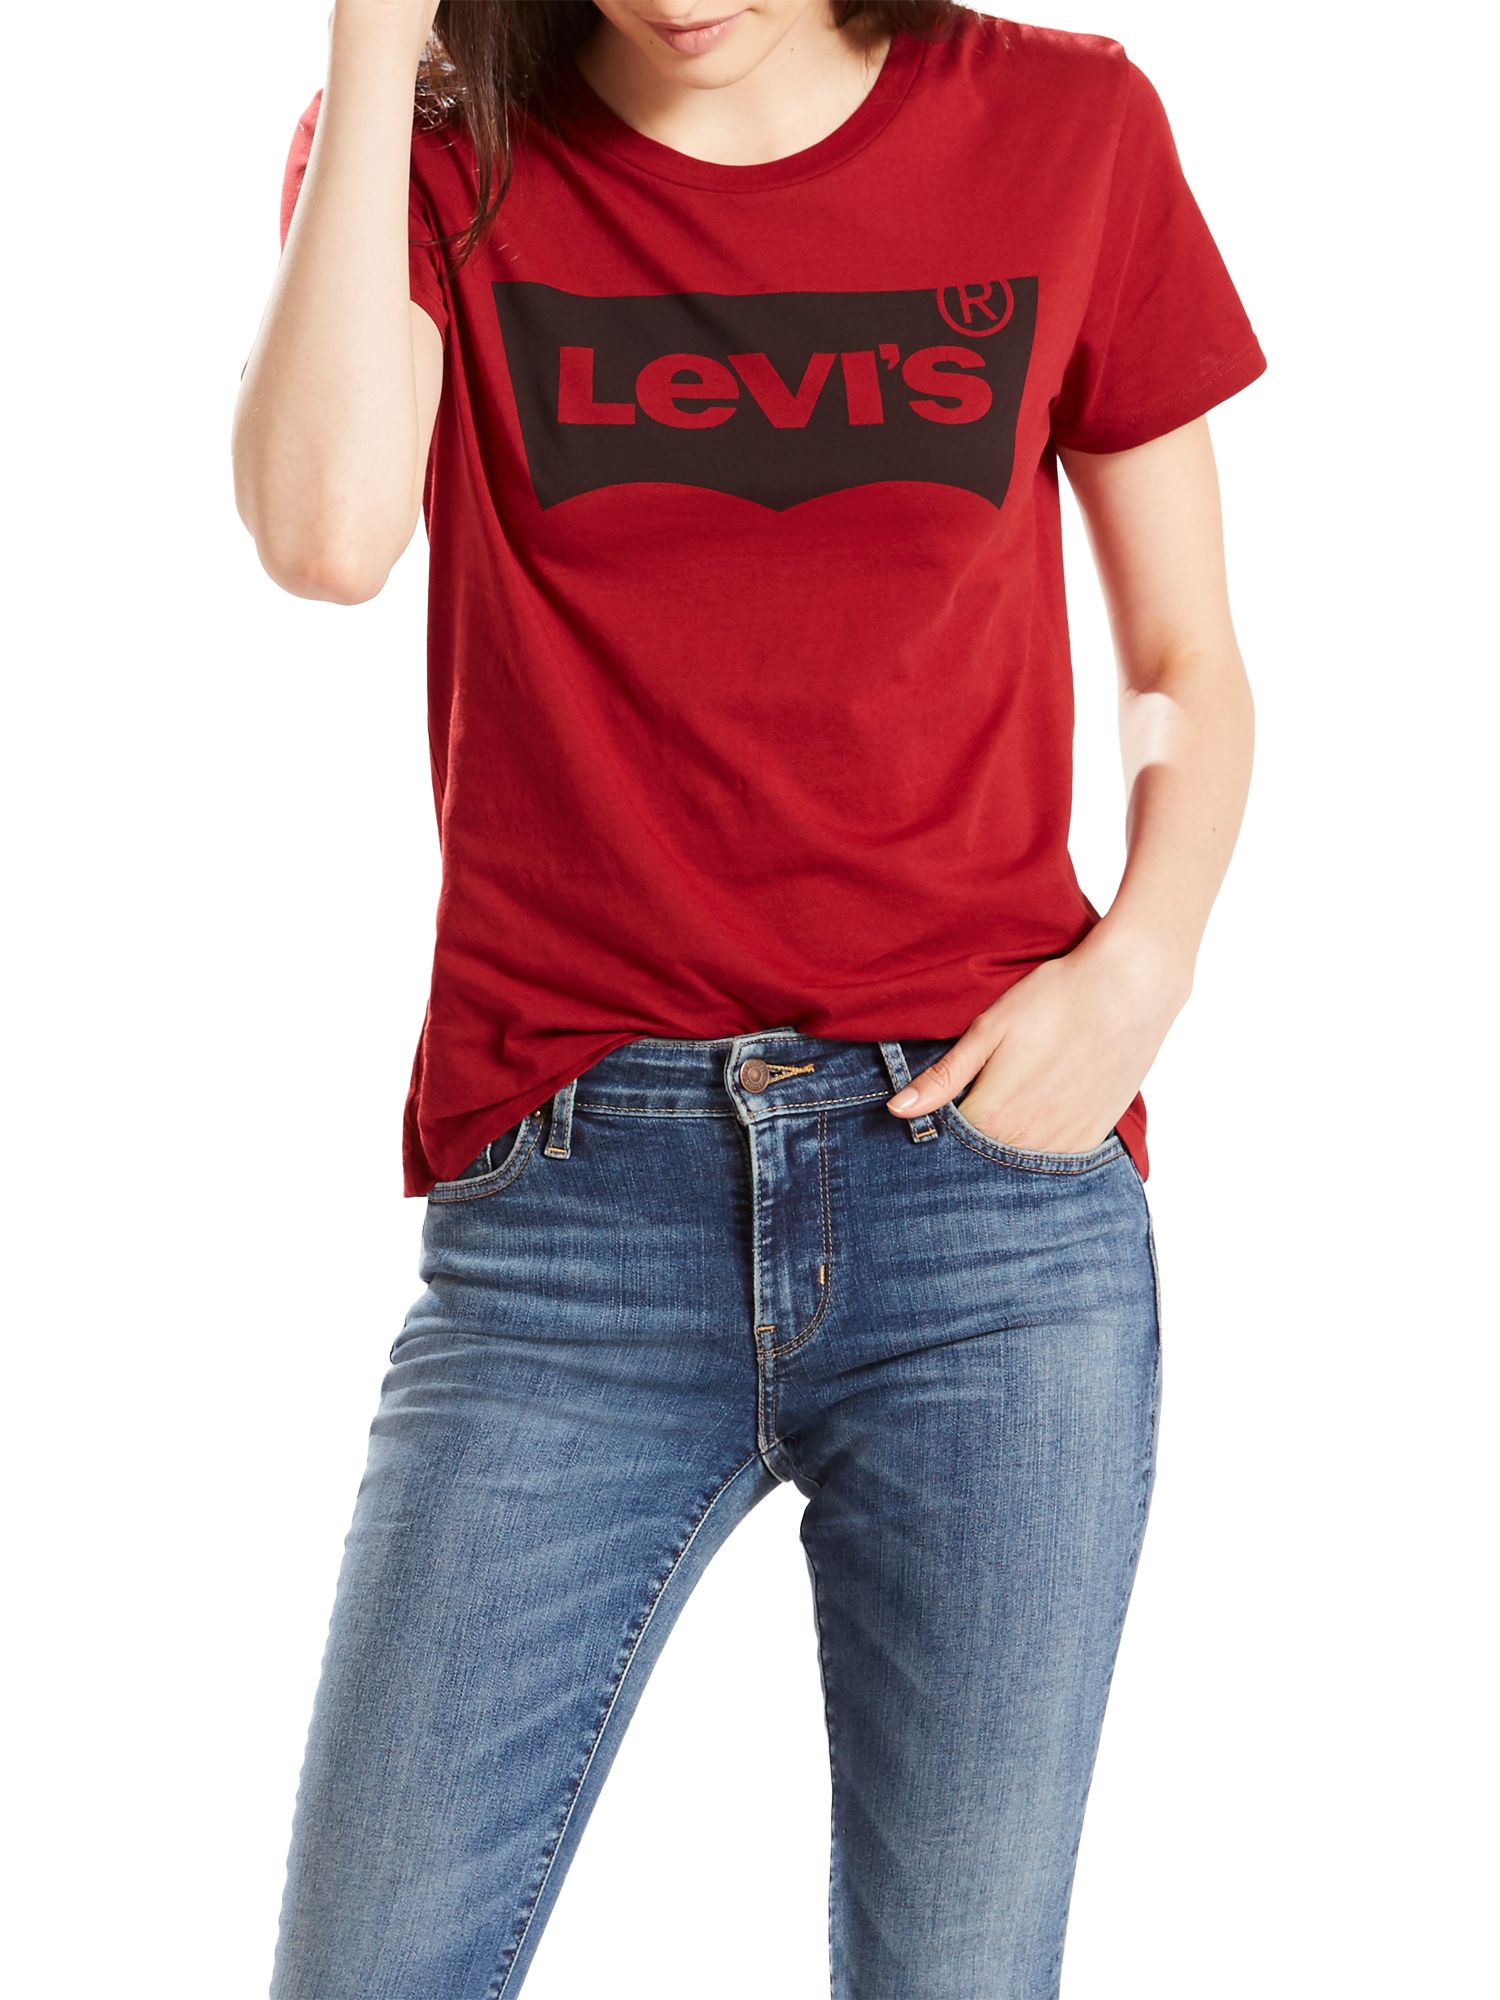 Купить футболку levis. Футболка Левис. Левайс майка майка красная. Levis женская черная футболка Levis. Левайс черная футболка женская.